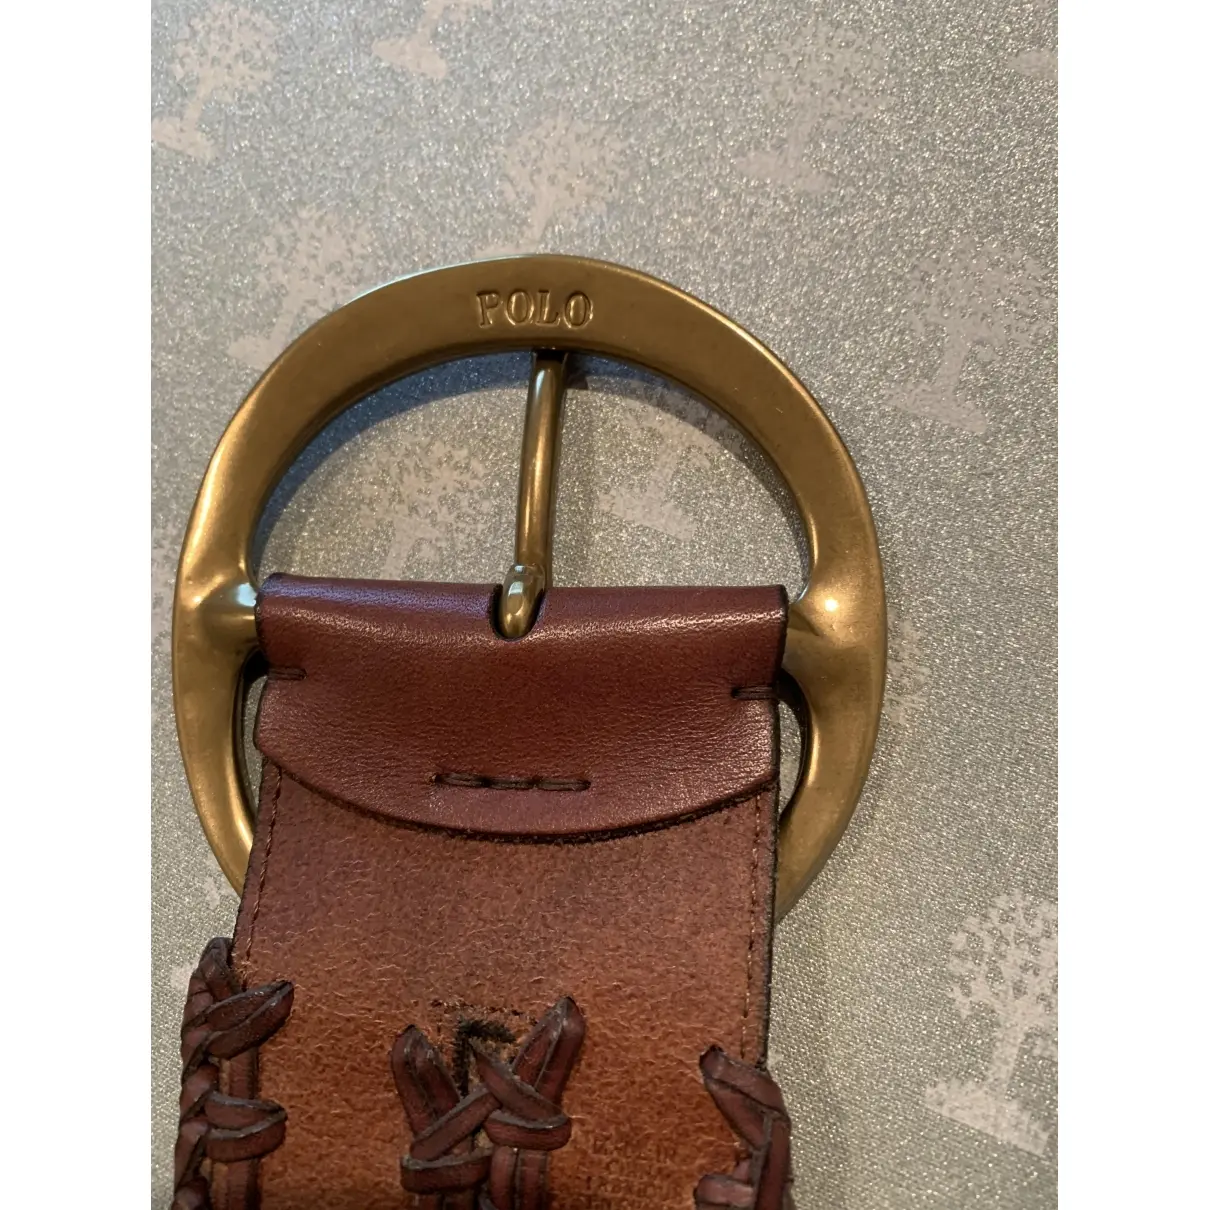 Buy Polo Ralph Lauren Leather belt online